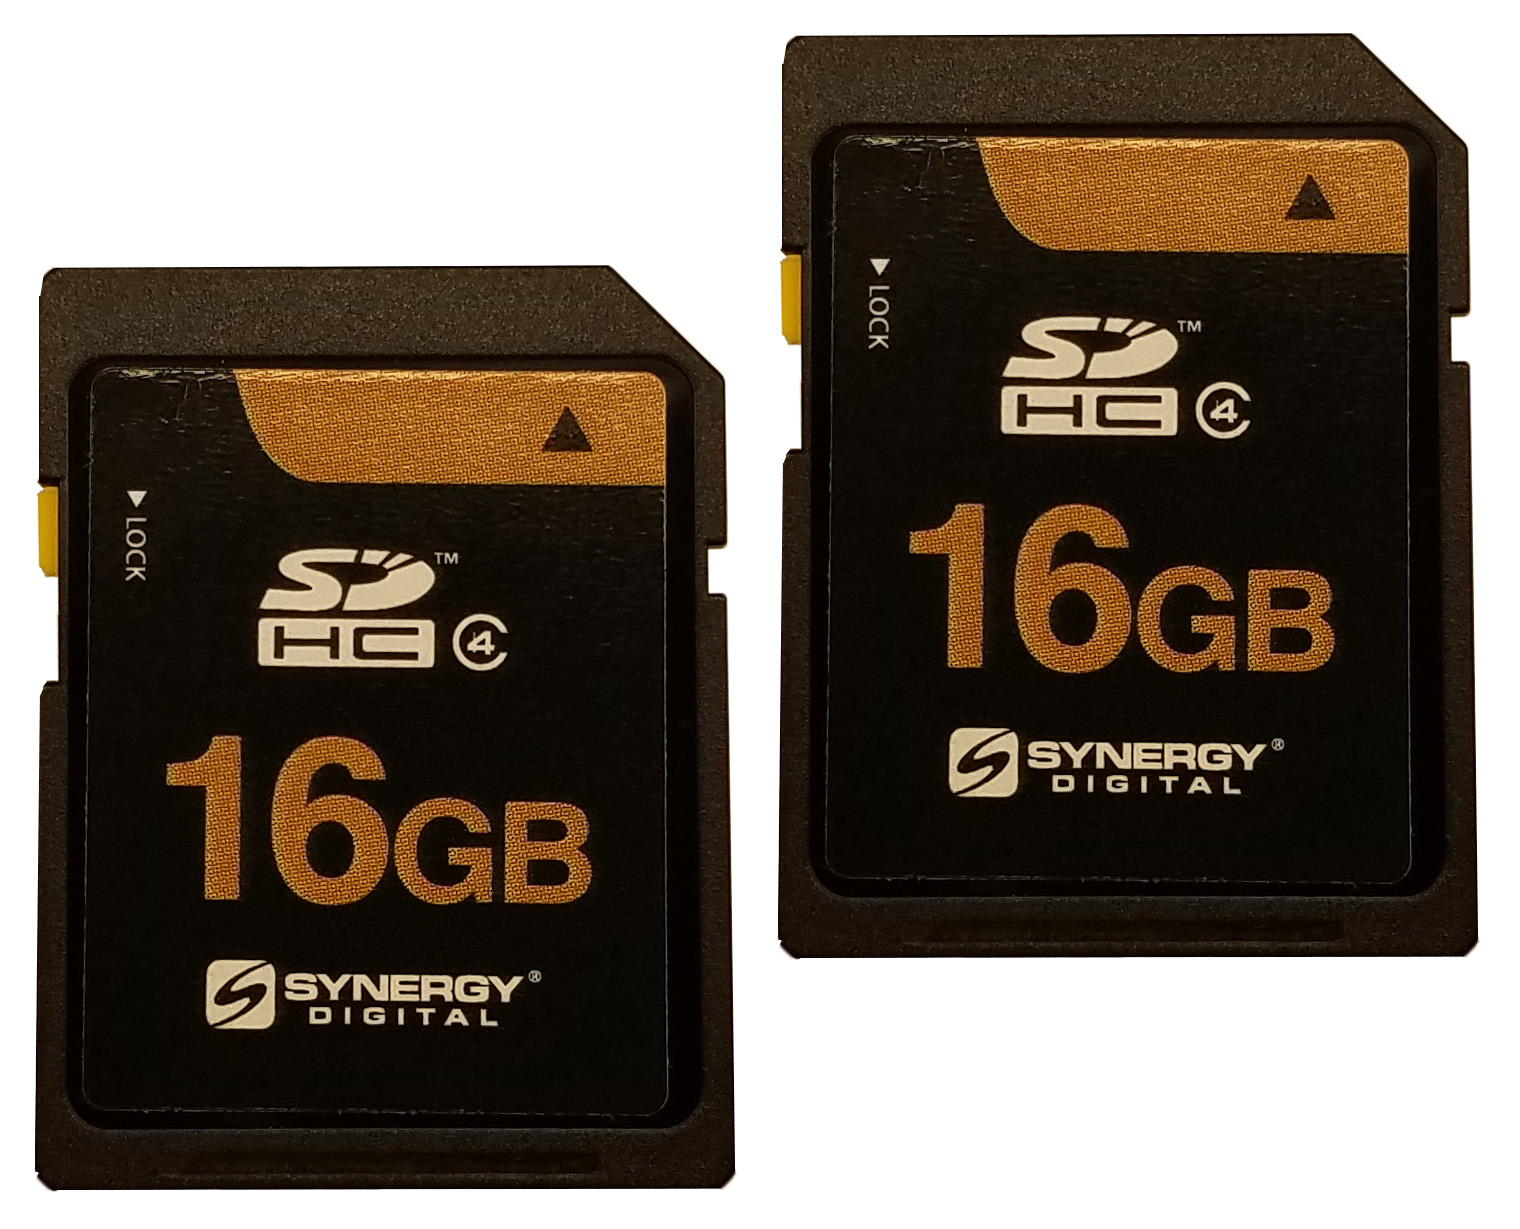 Memory Cards for PentaxDigital Camera